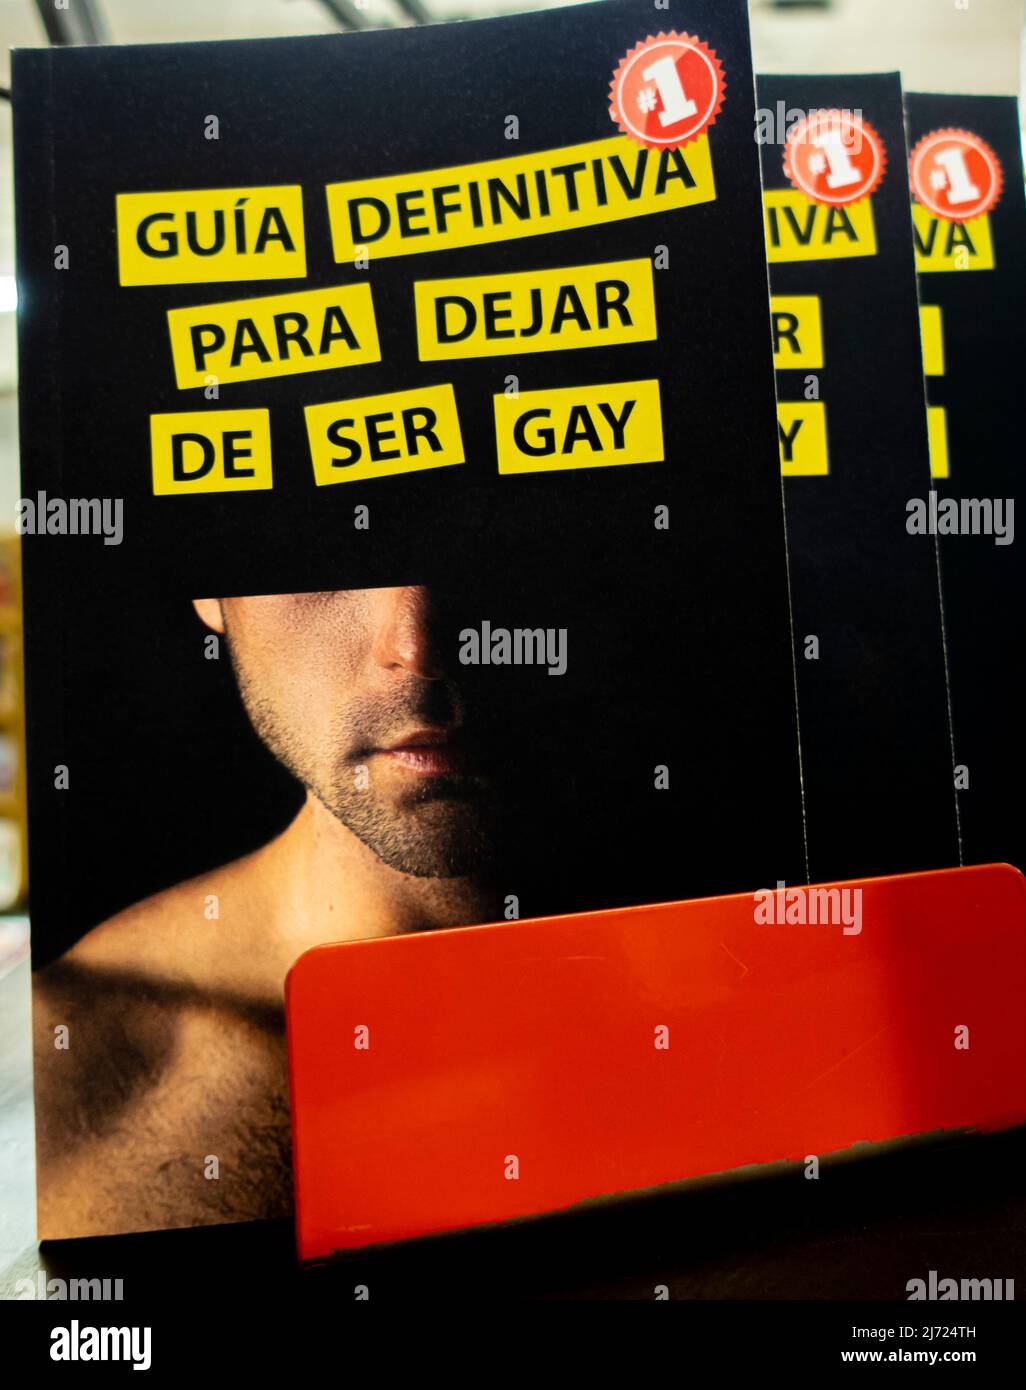 Guía definitiva para dejar de ser gay Broche -the definitive guide to come out as gay - Spanish brochure 2021. Lito Míguez Stock Photo